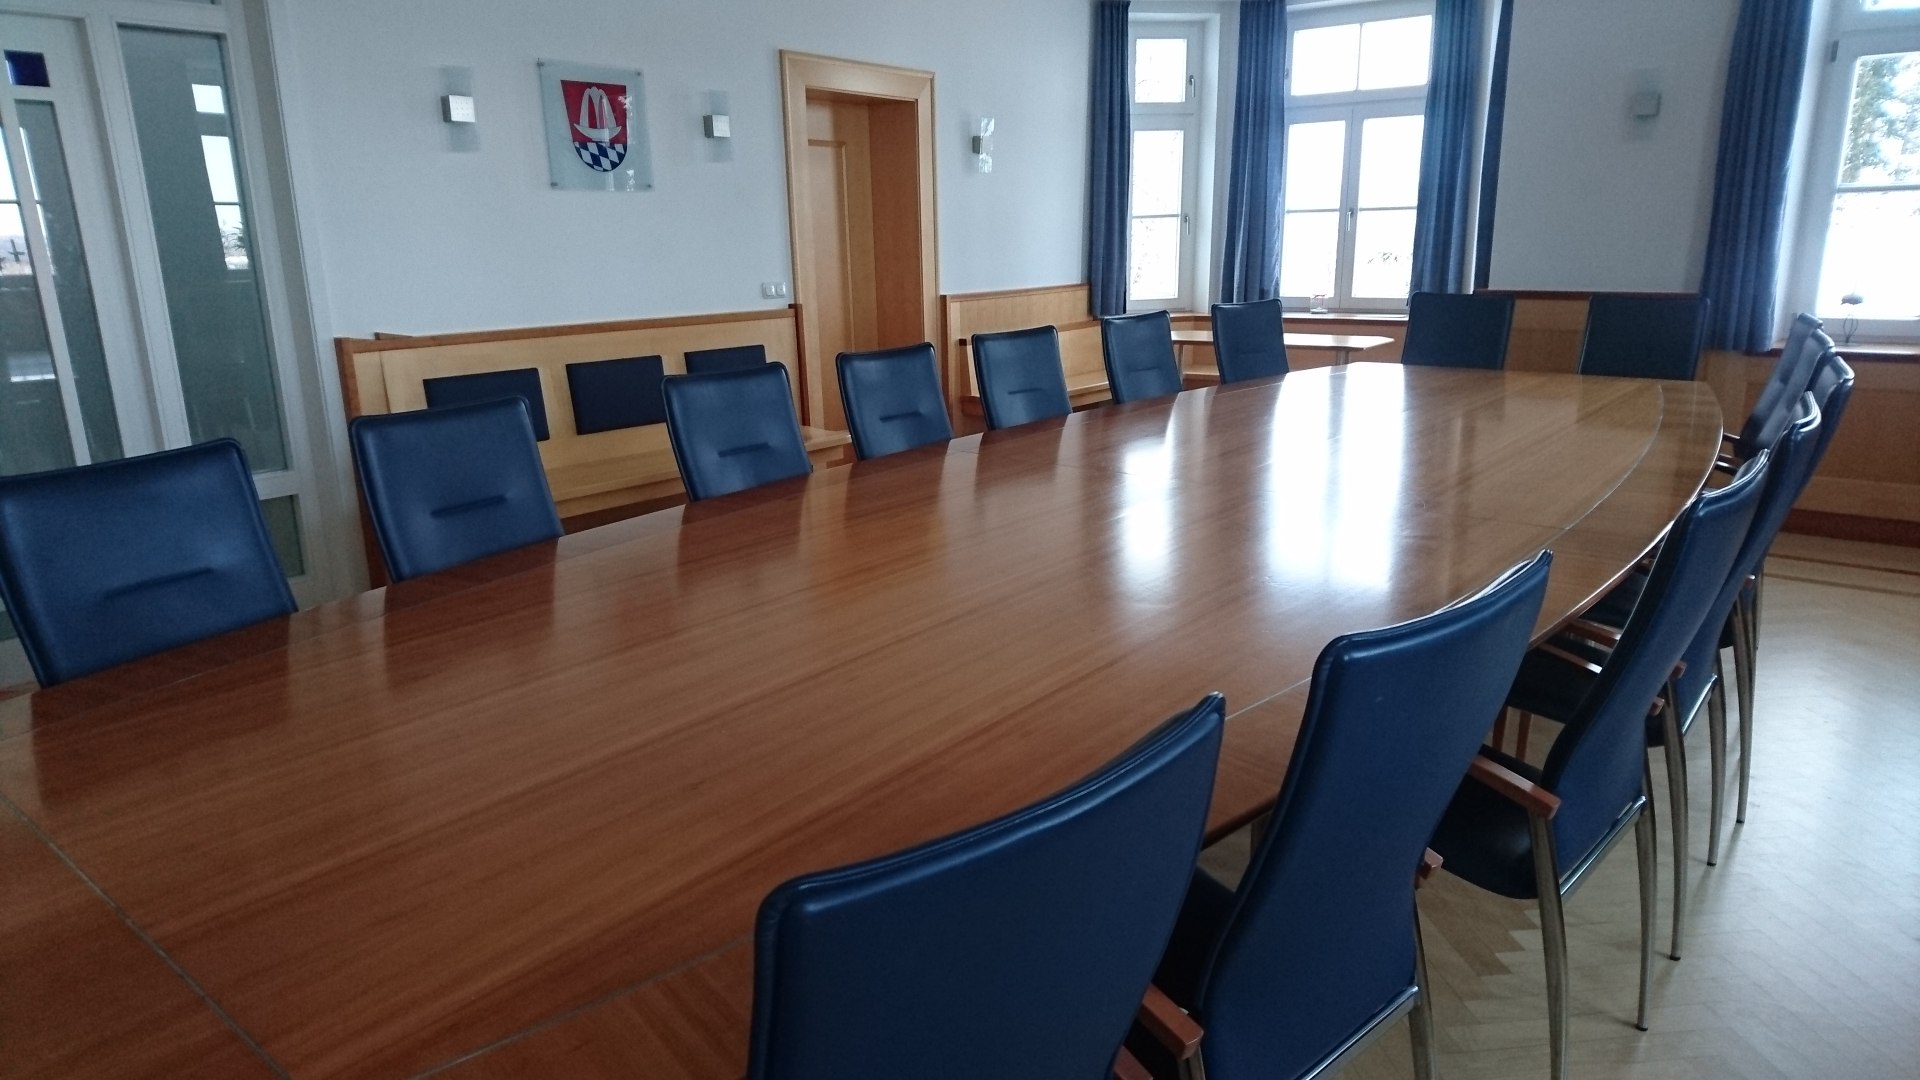 Sitzungssaal, © Gemeinde Bad Heilbrunn